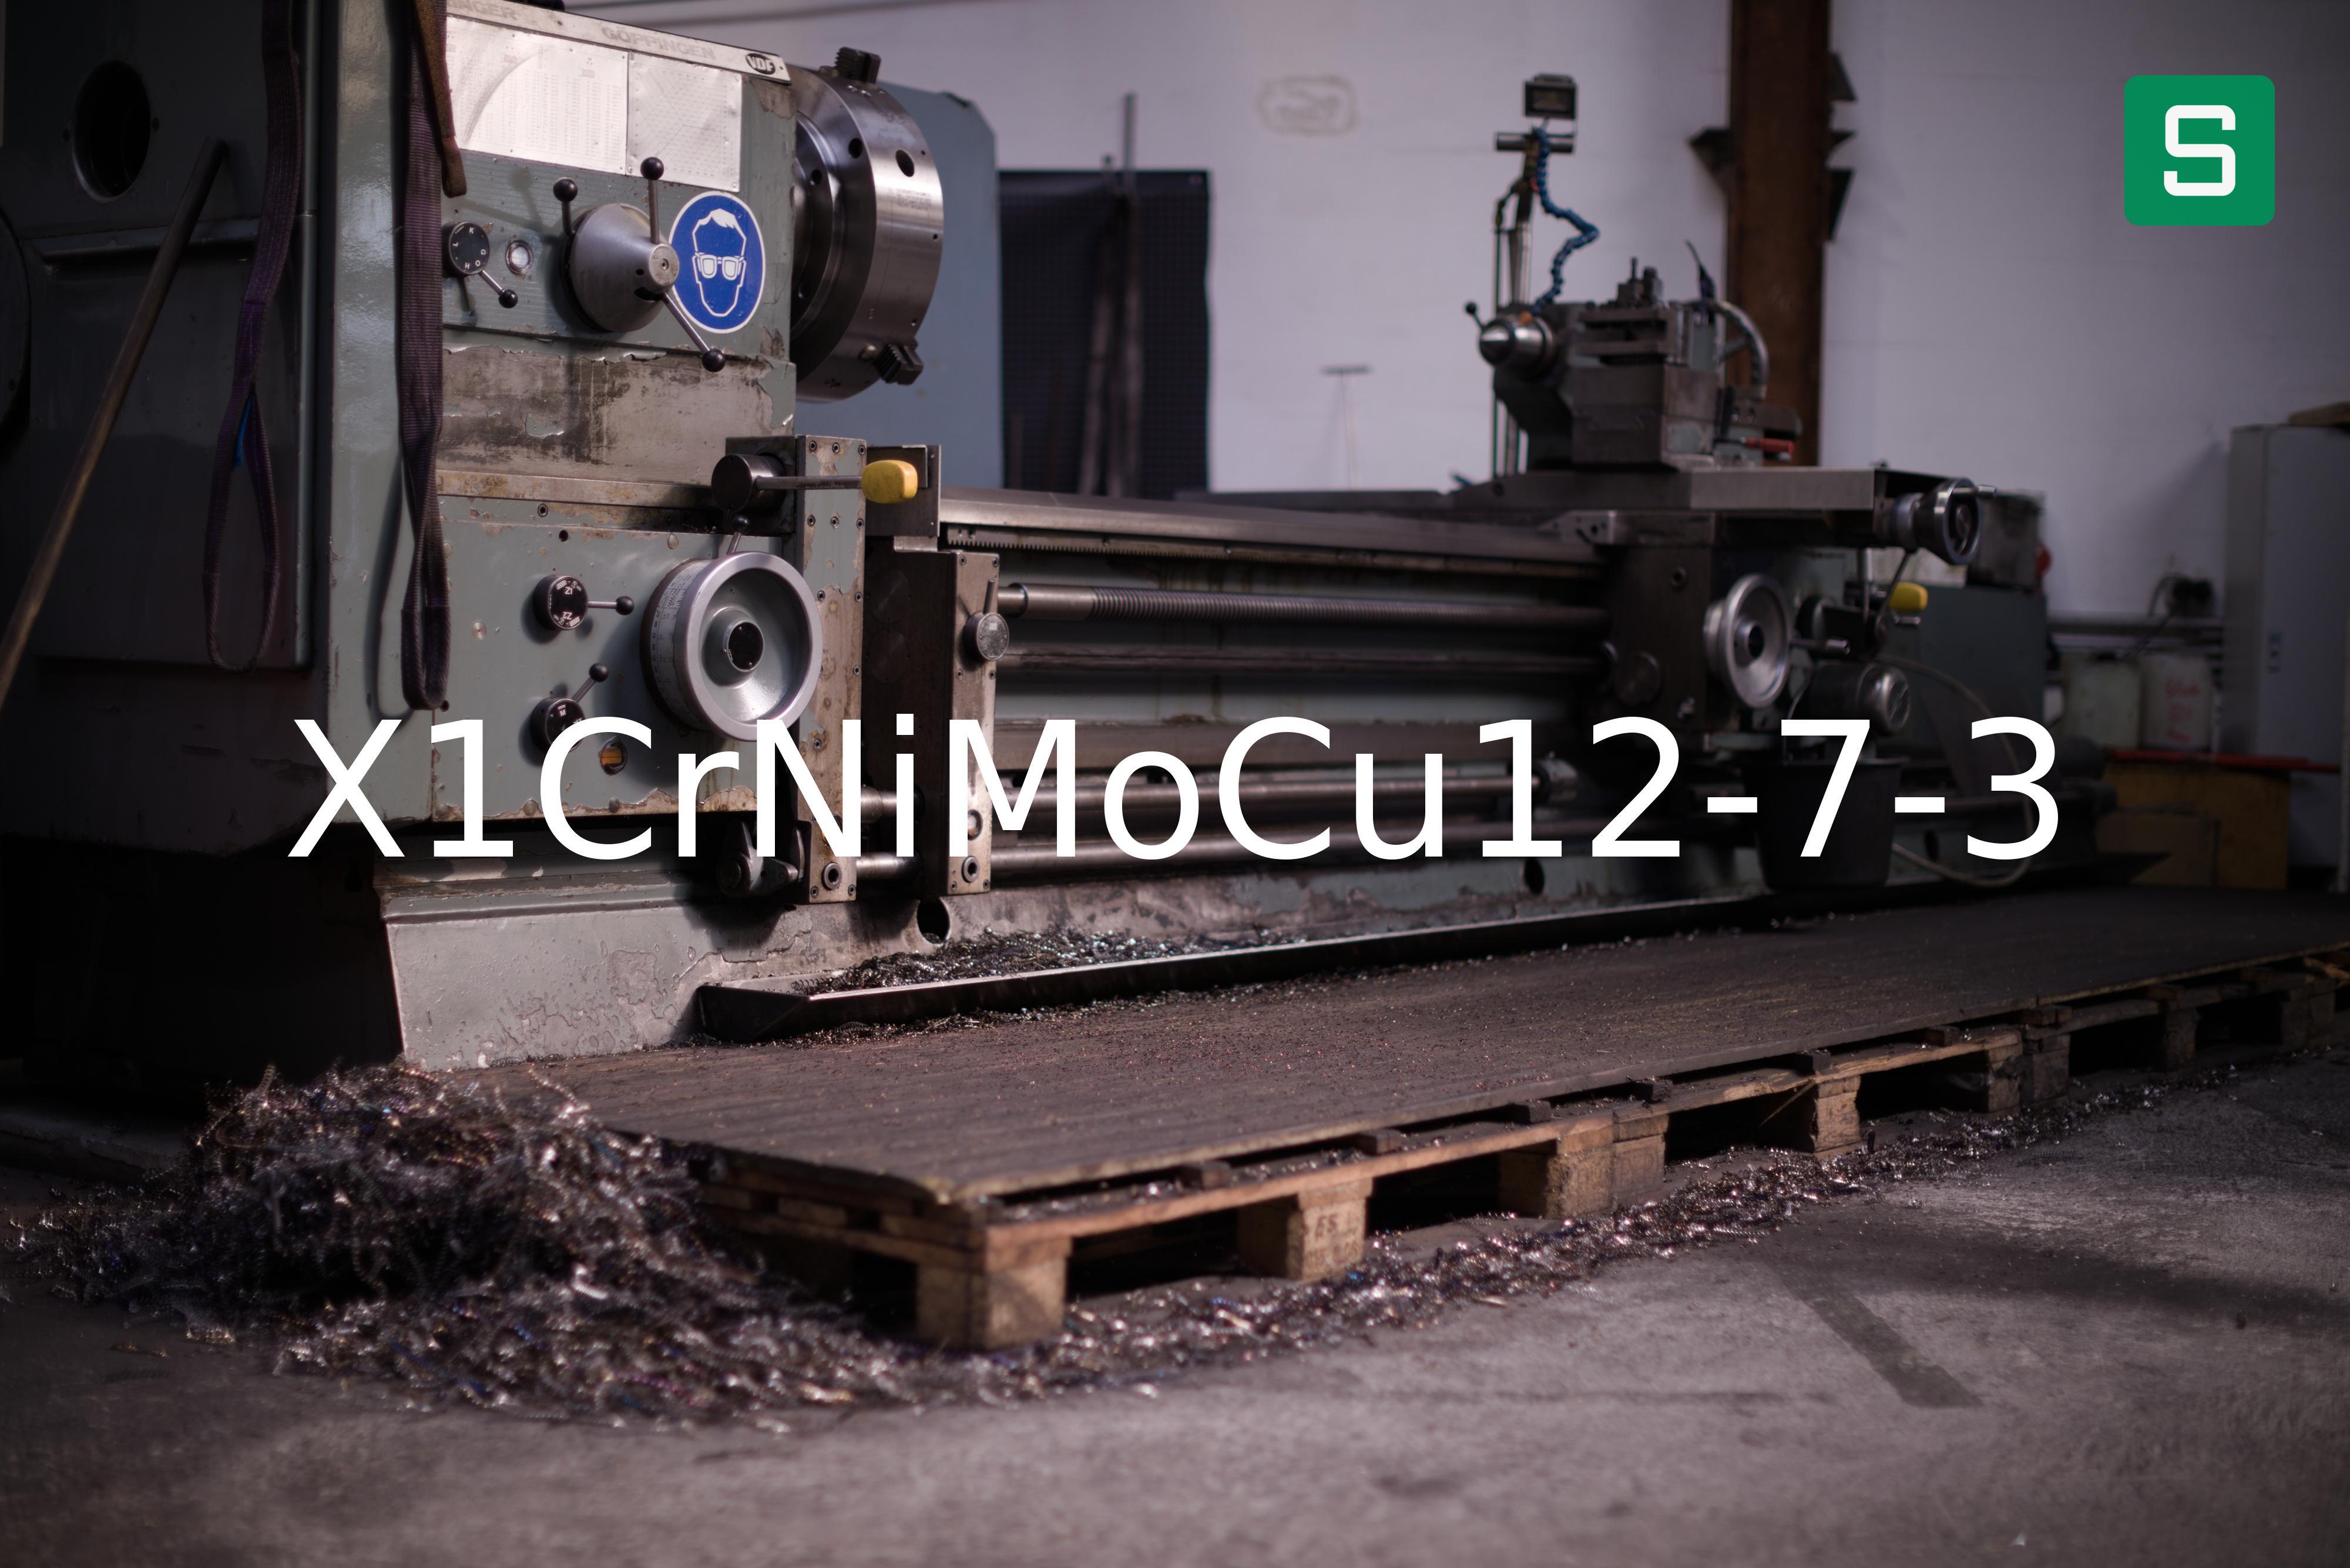 Steel Material: X1CrNiMoCu12-7-3